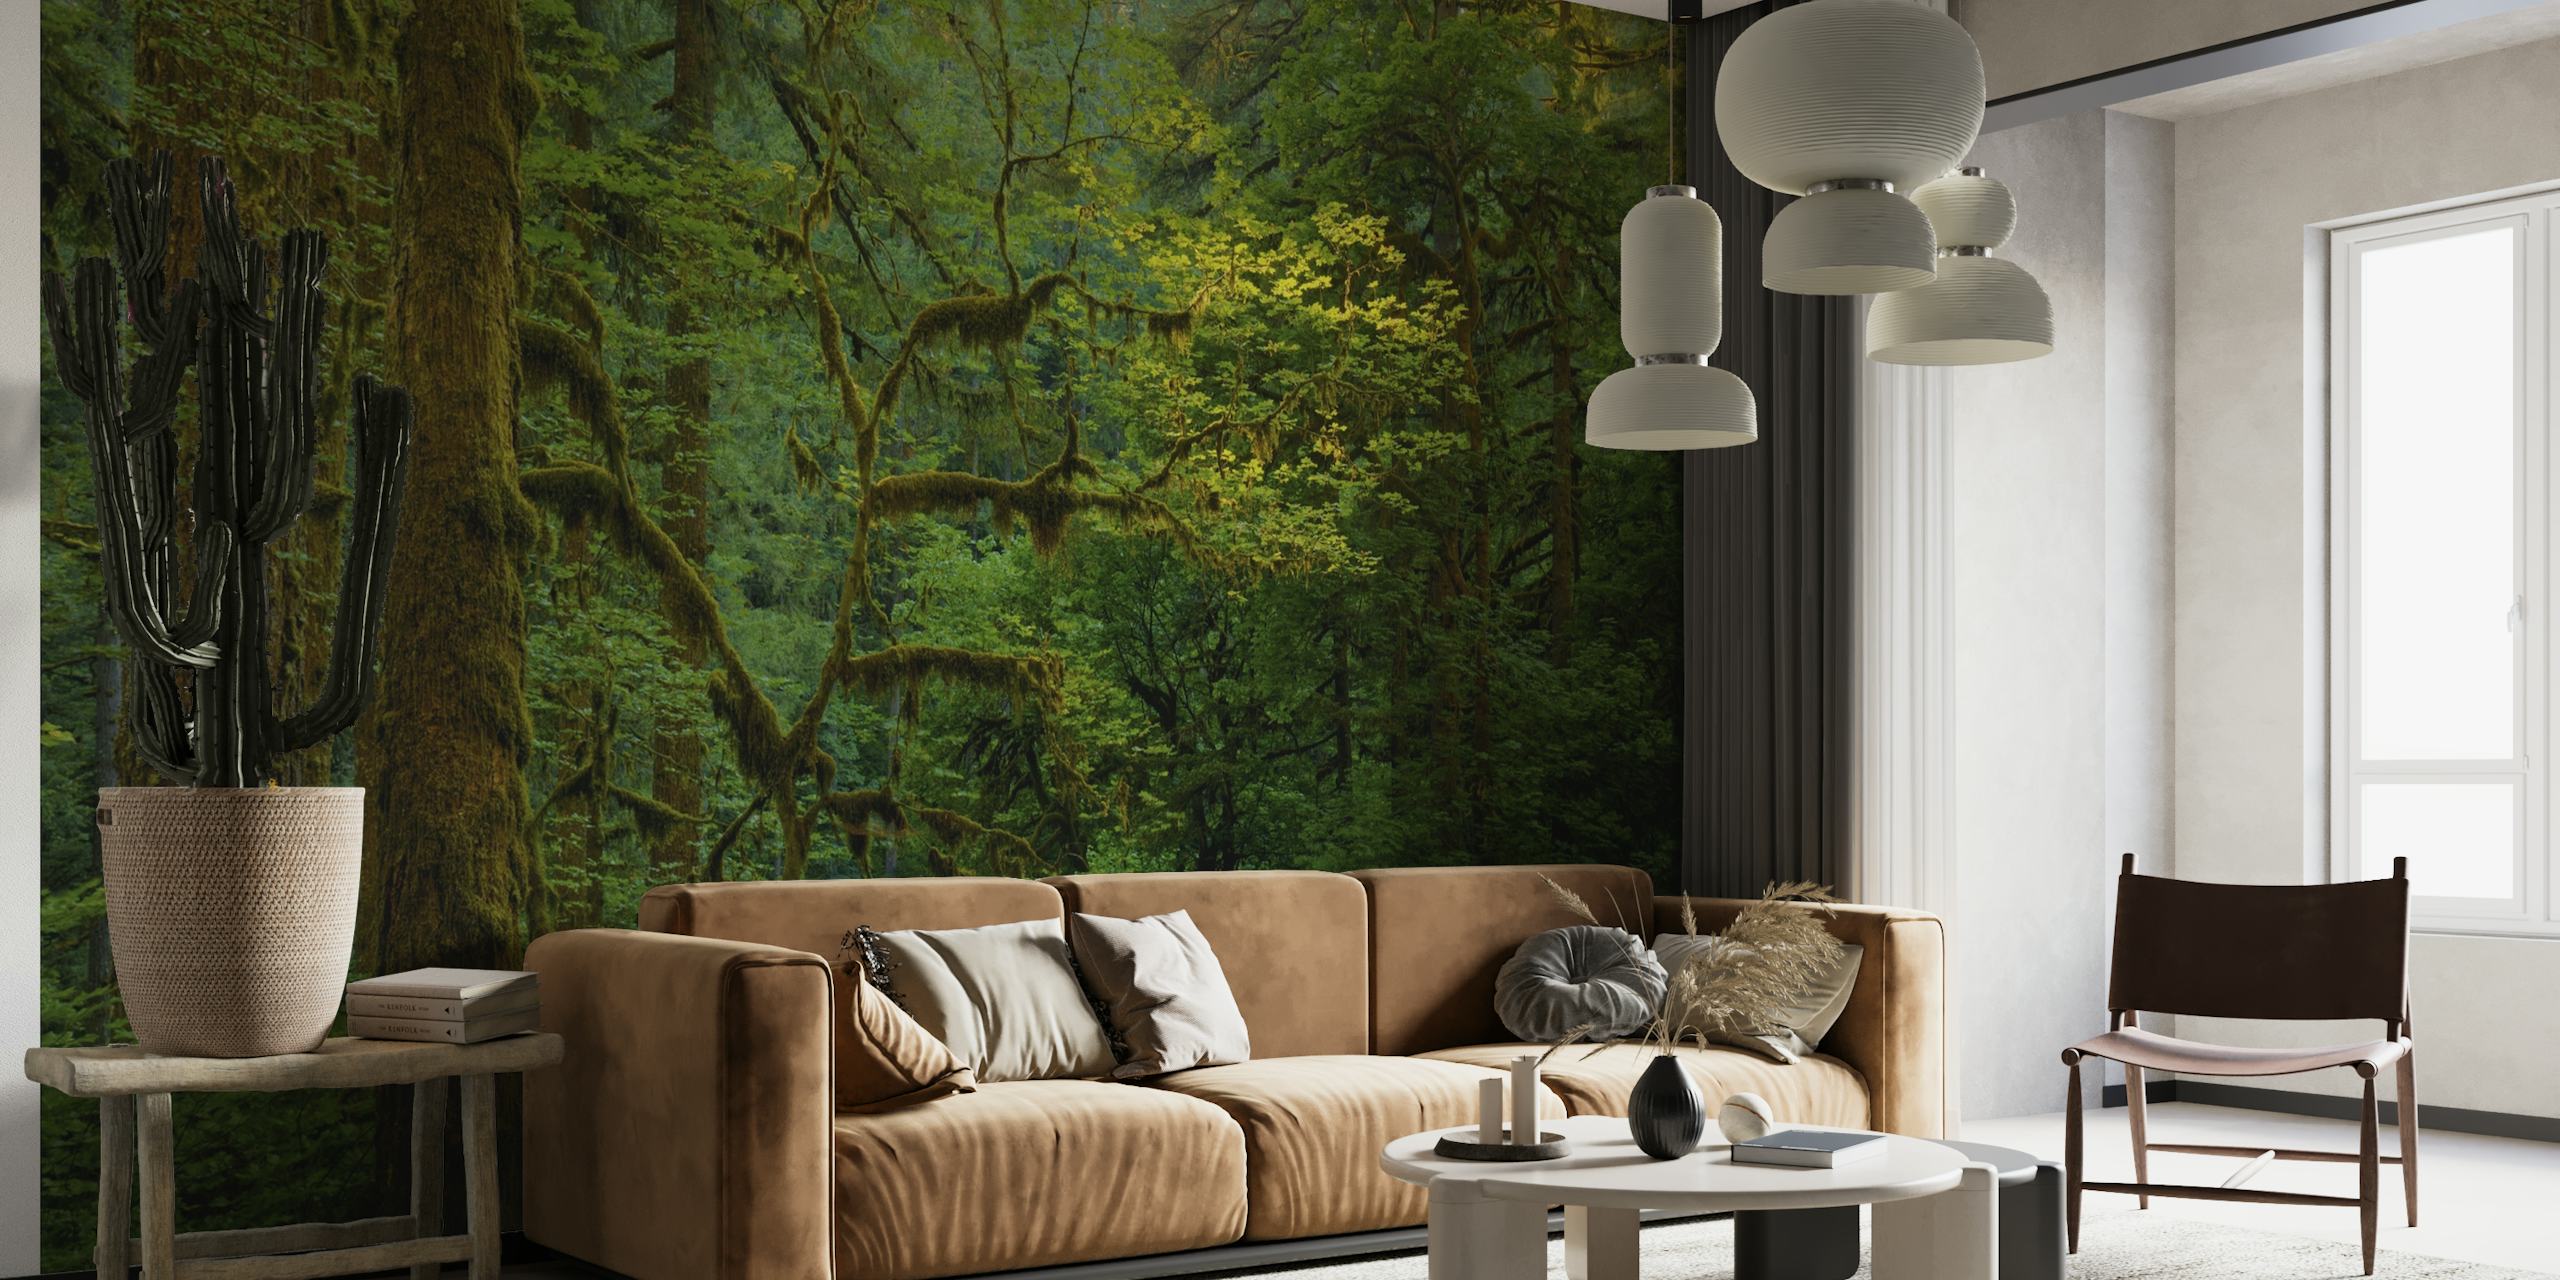 Zidna slika koja prikazuje mirnu šumsku scenu sa snopovima svjetlosti koji se filtriraju kroz gusto lišće.